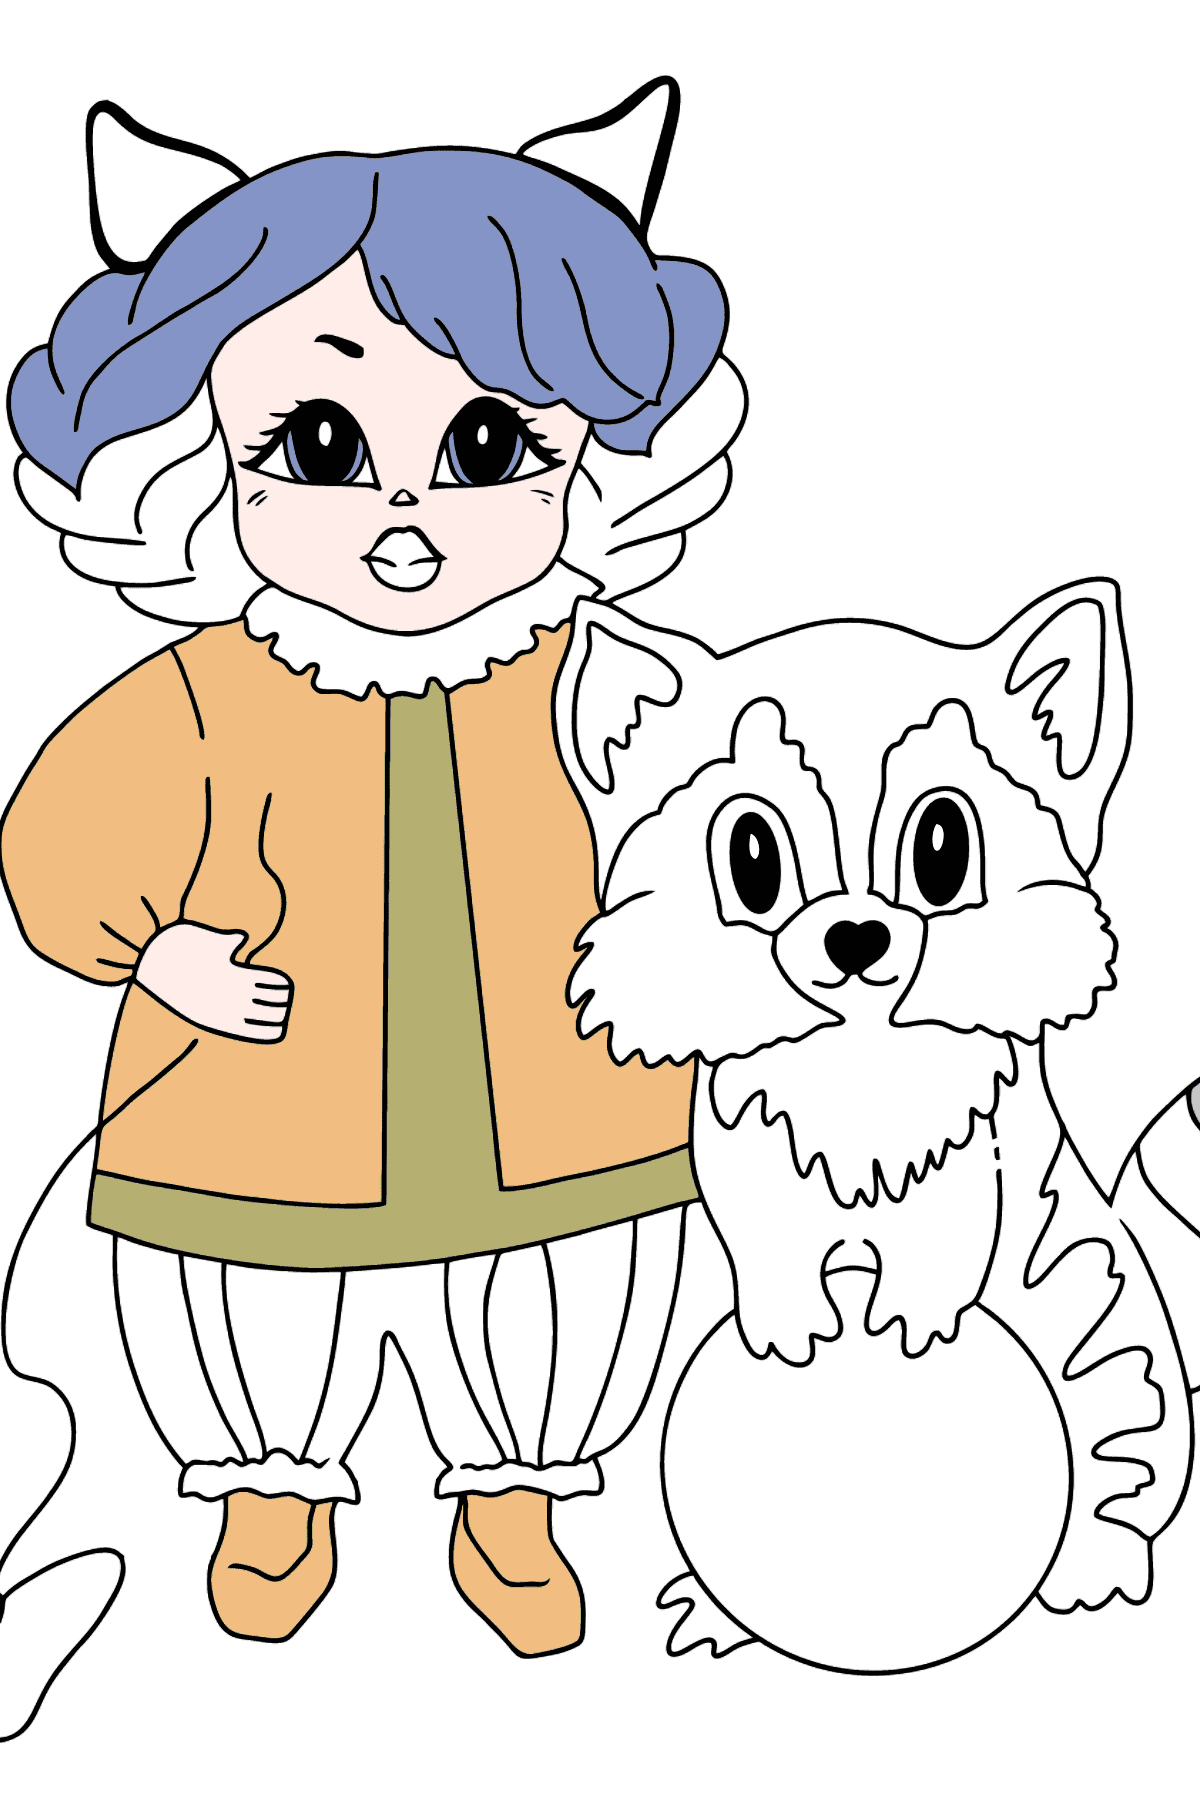 Dibujo para Colorear - Una Princesa con un Gato y un Mapache - Dibujos para Colorear para Niños